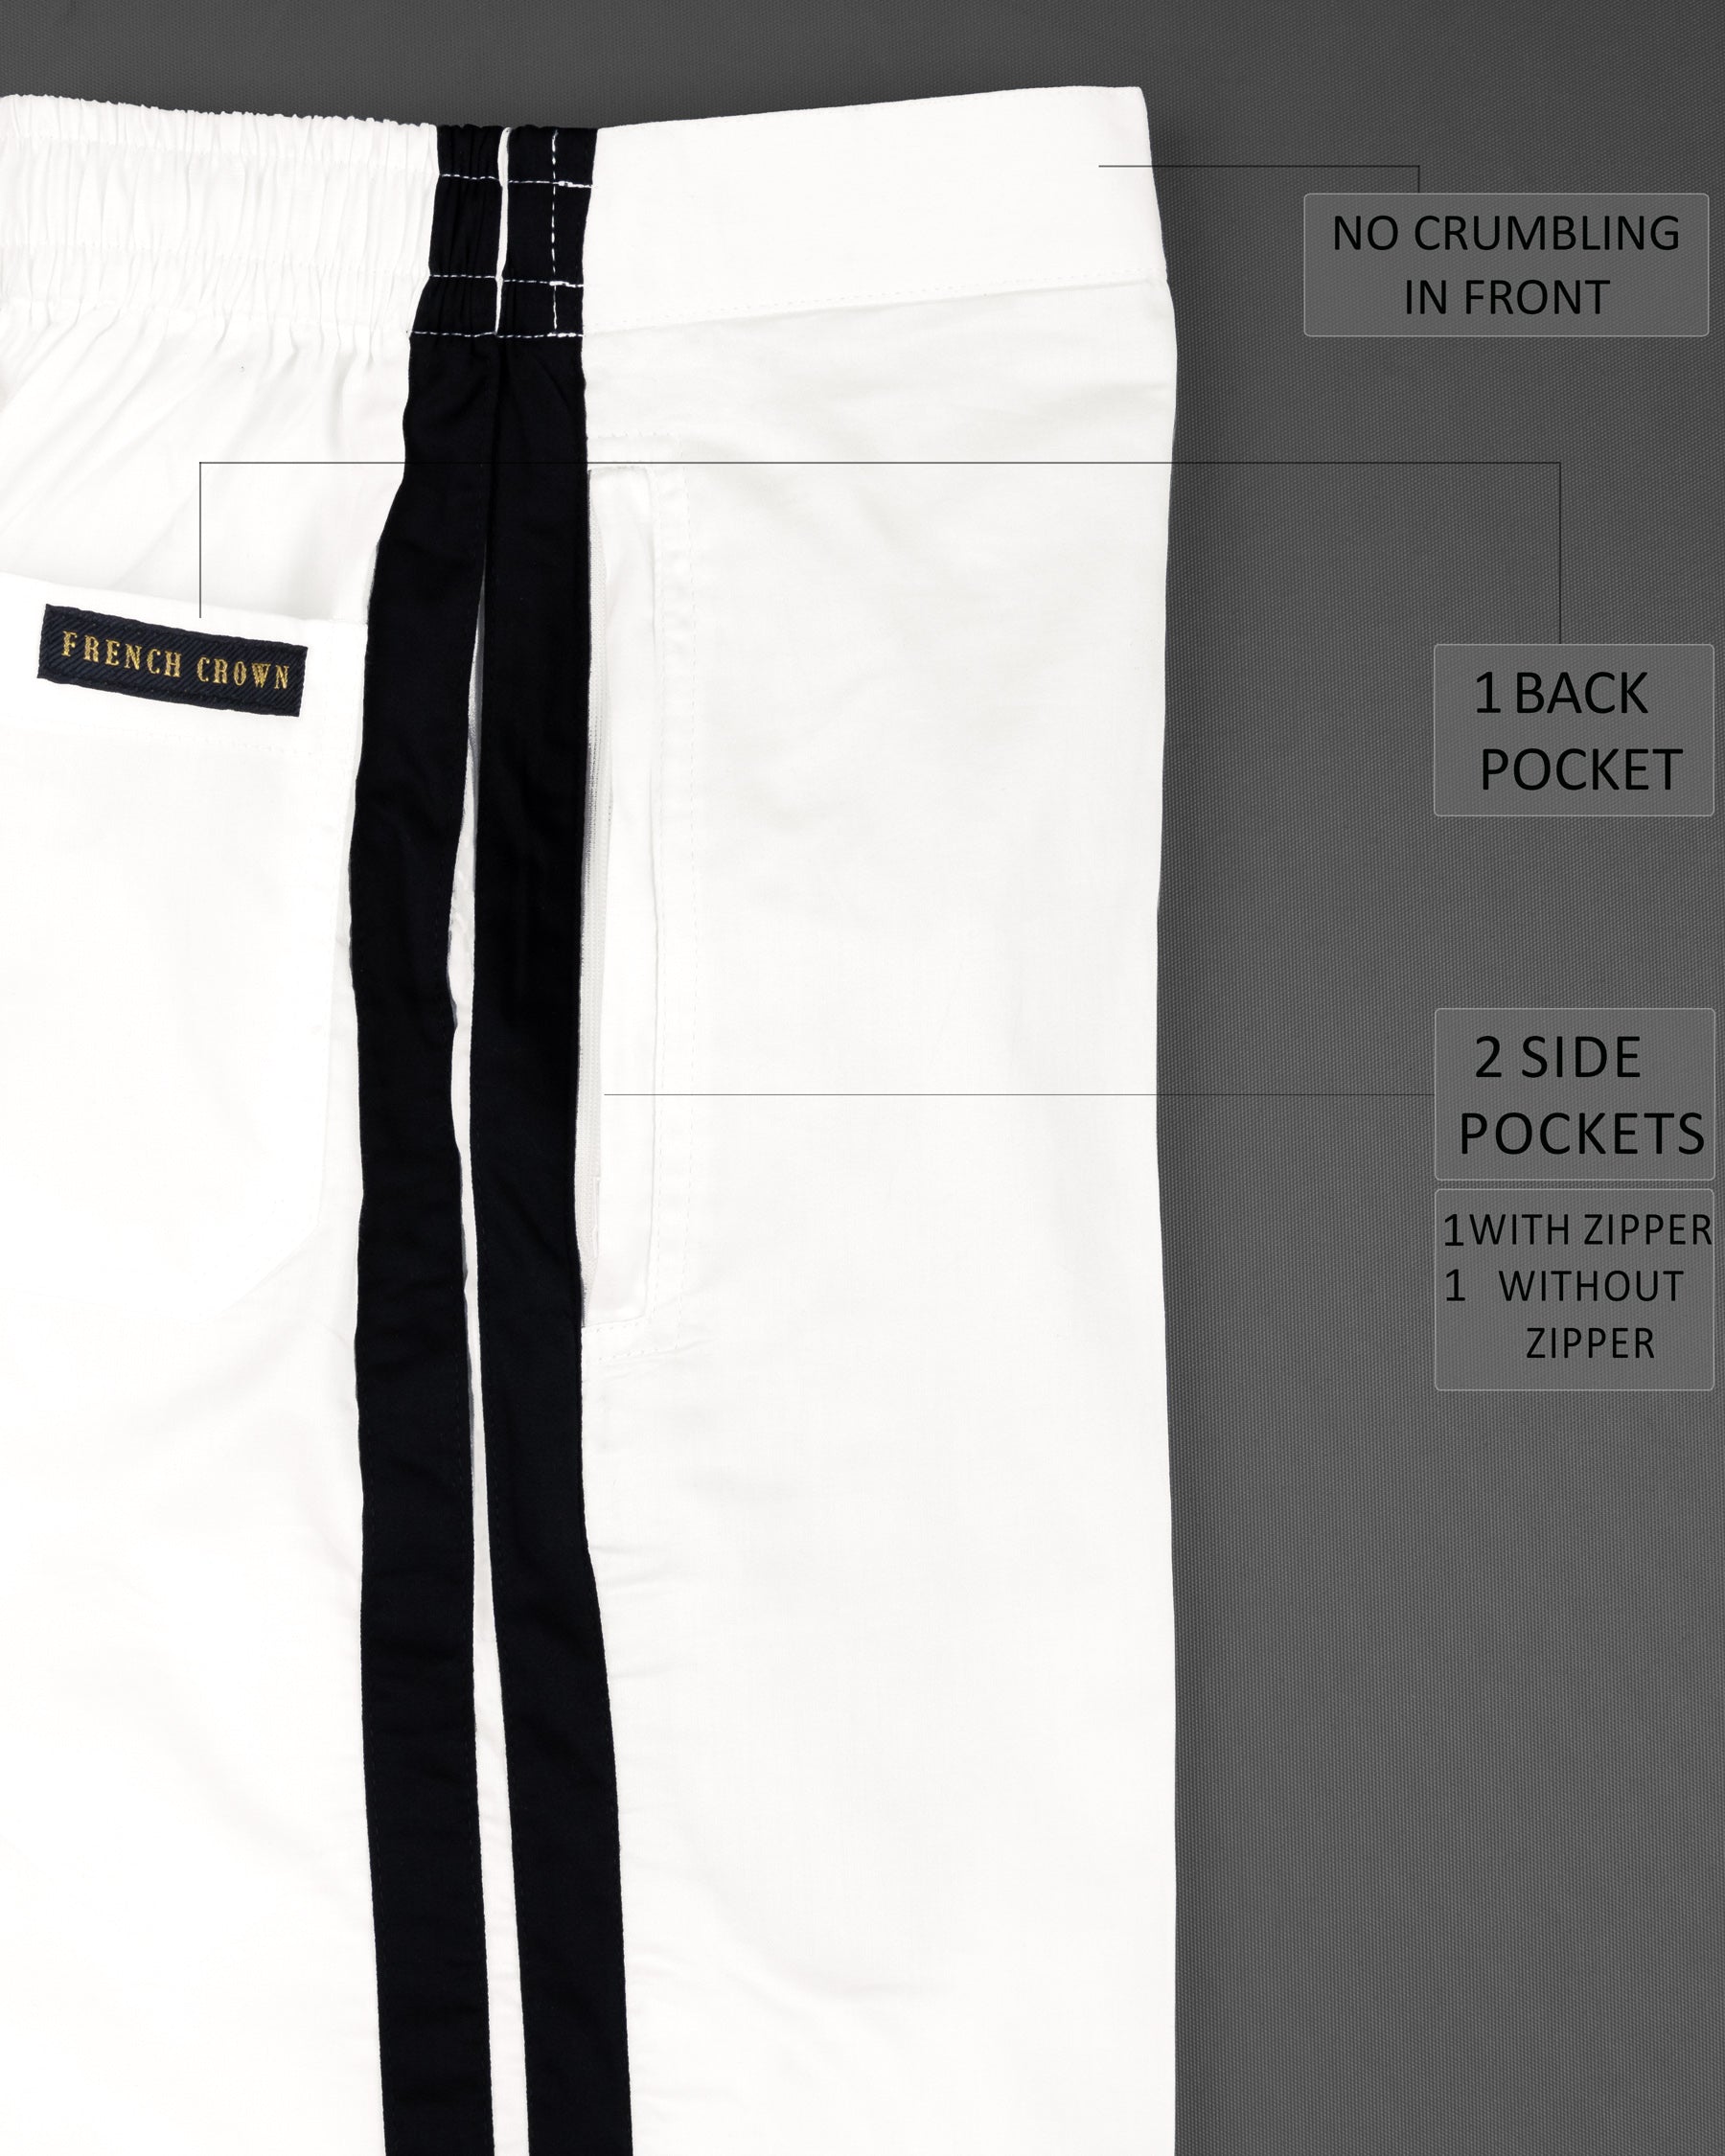 Bright White with Black Striped Super Soft Premium Cotton Designer Shorts SR144-28, SR144-30, SR144-32, SR144-34, SR144-36, SR144-38, SR144-40, SR144-42, SR144-44